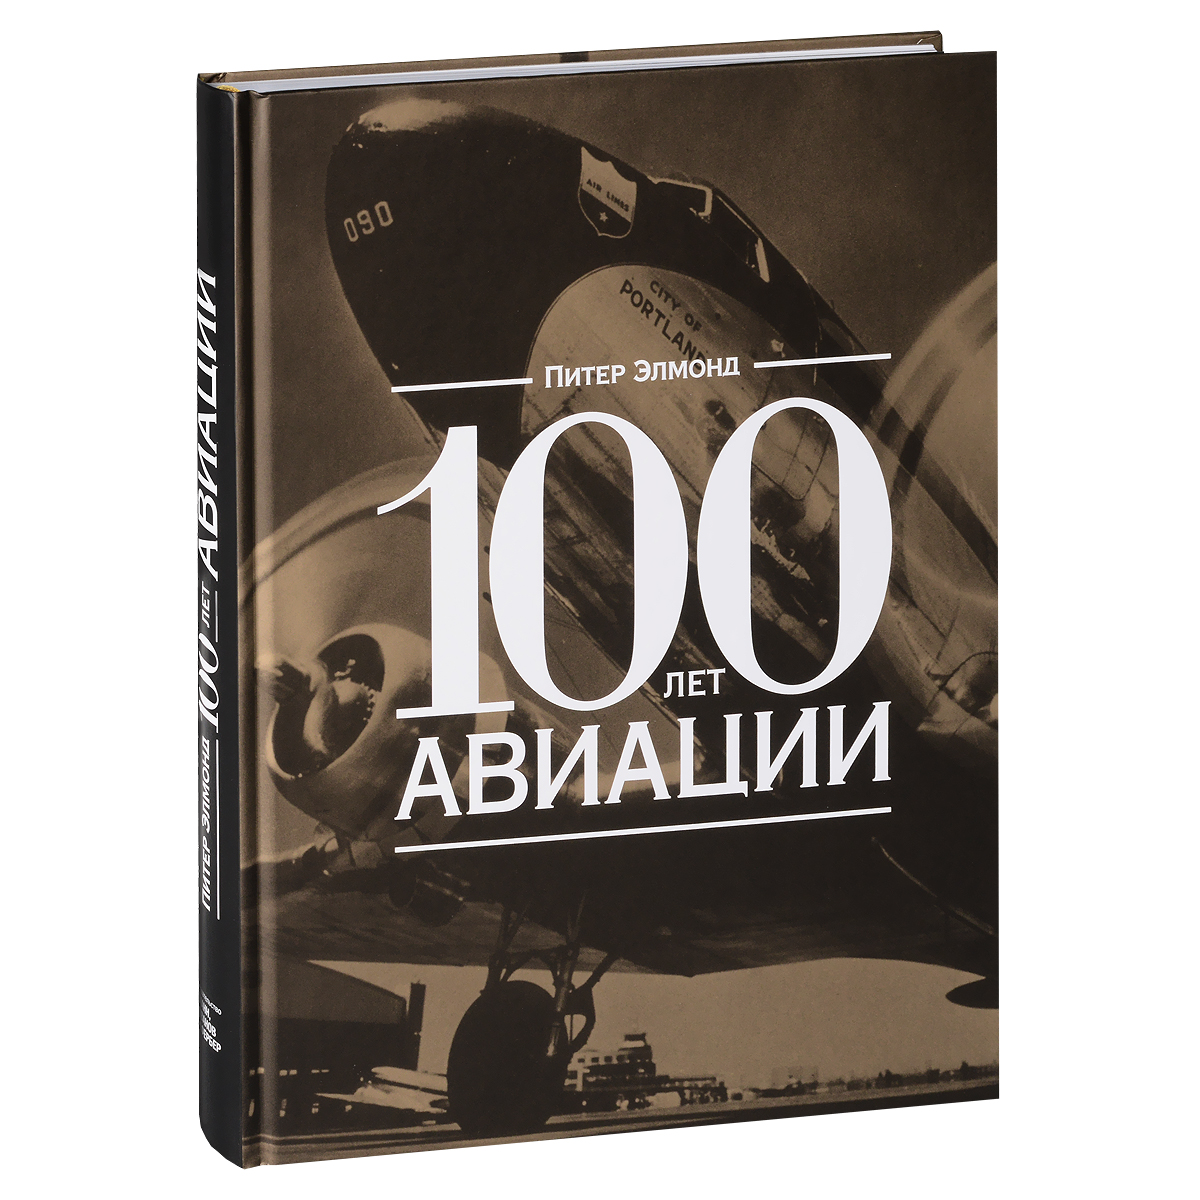 100 лет авиации